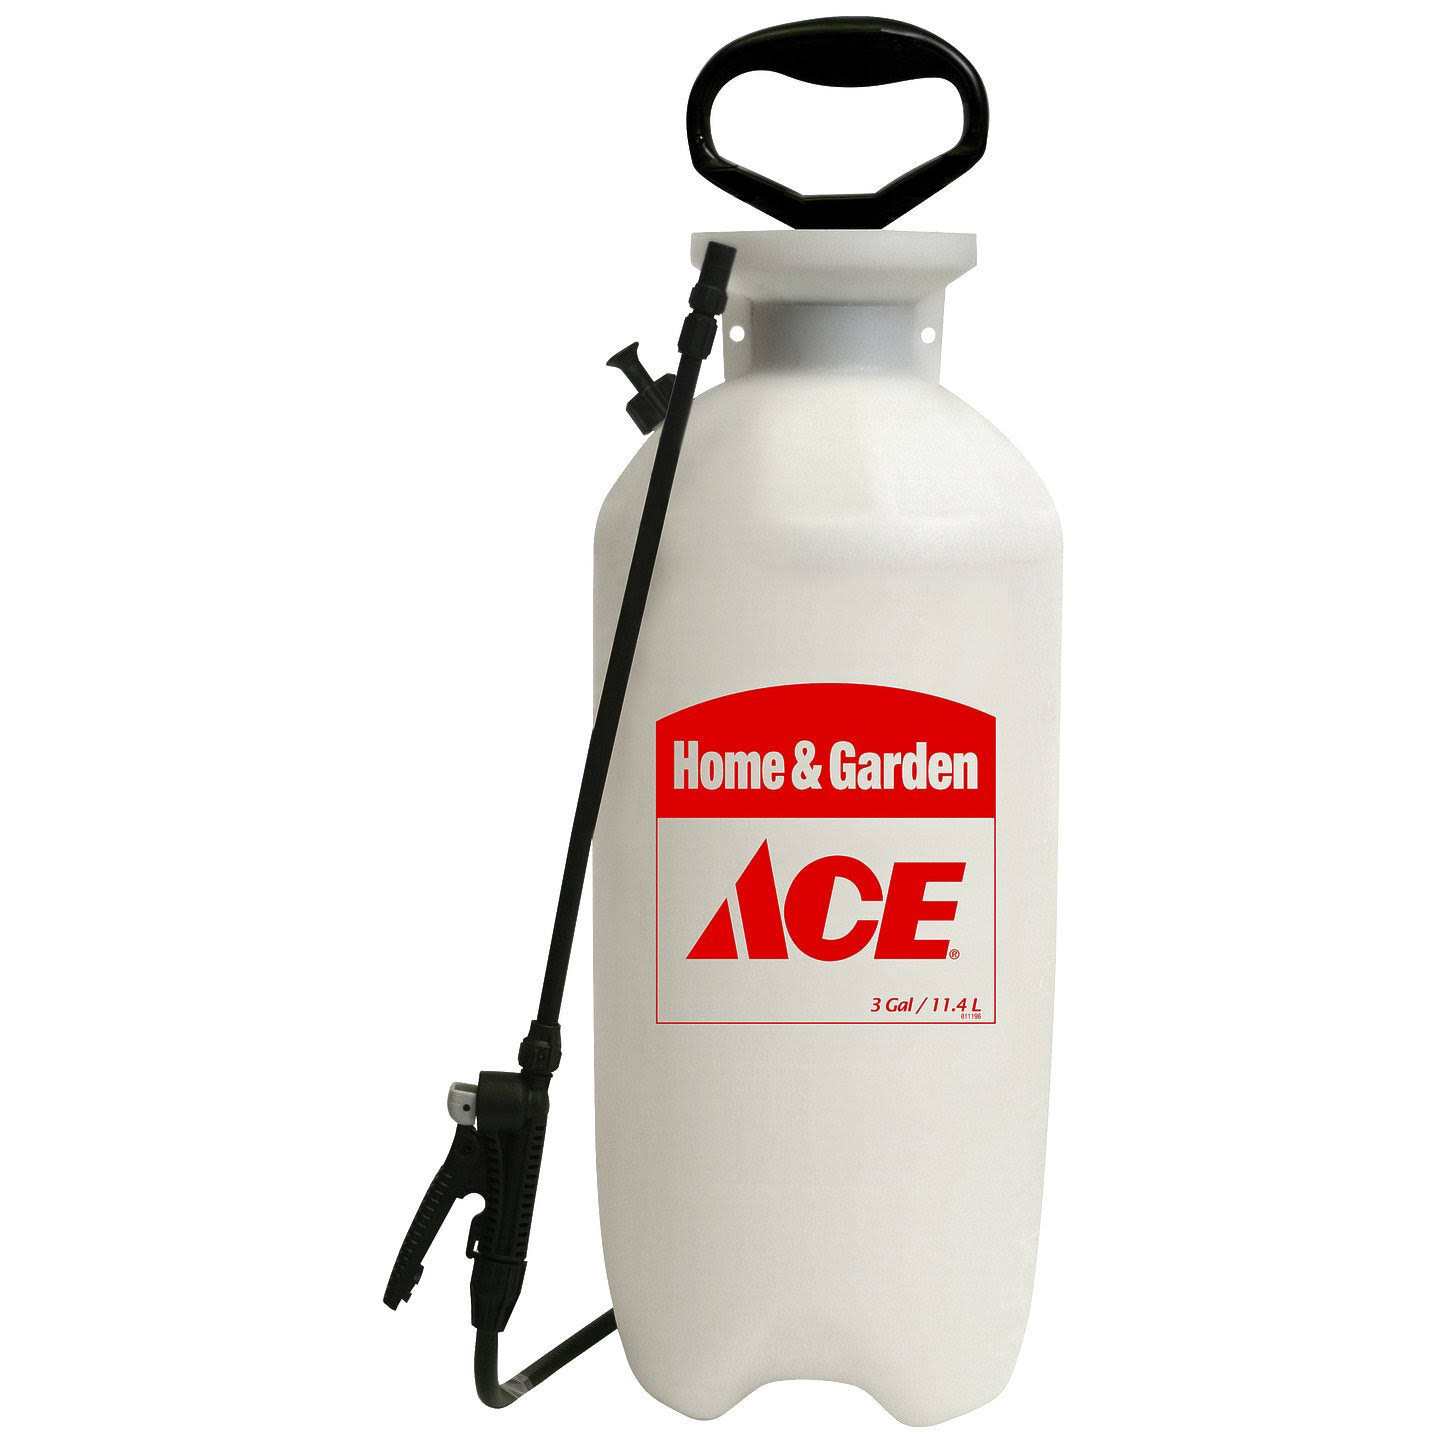 Ace Lawn and Garden Sprayer - 3 Gallon